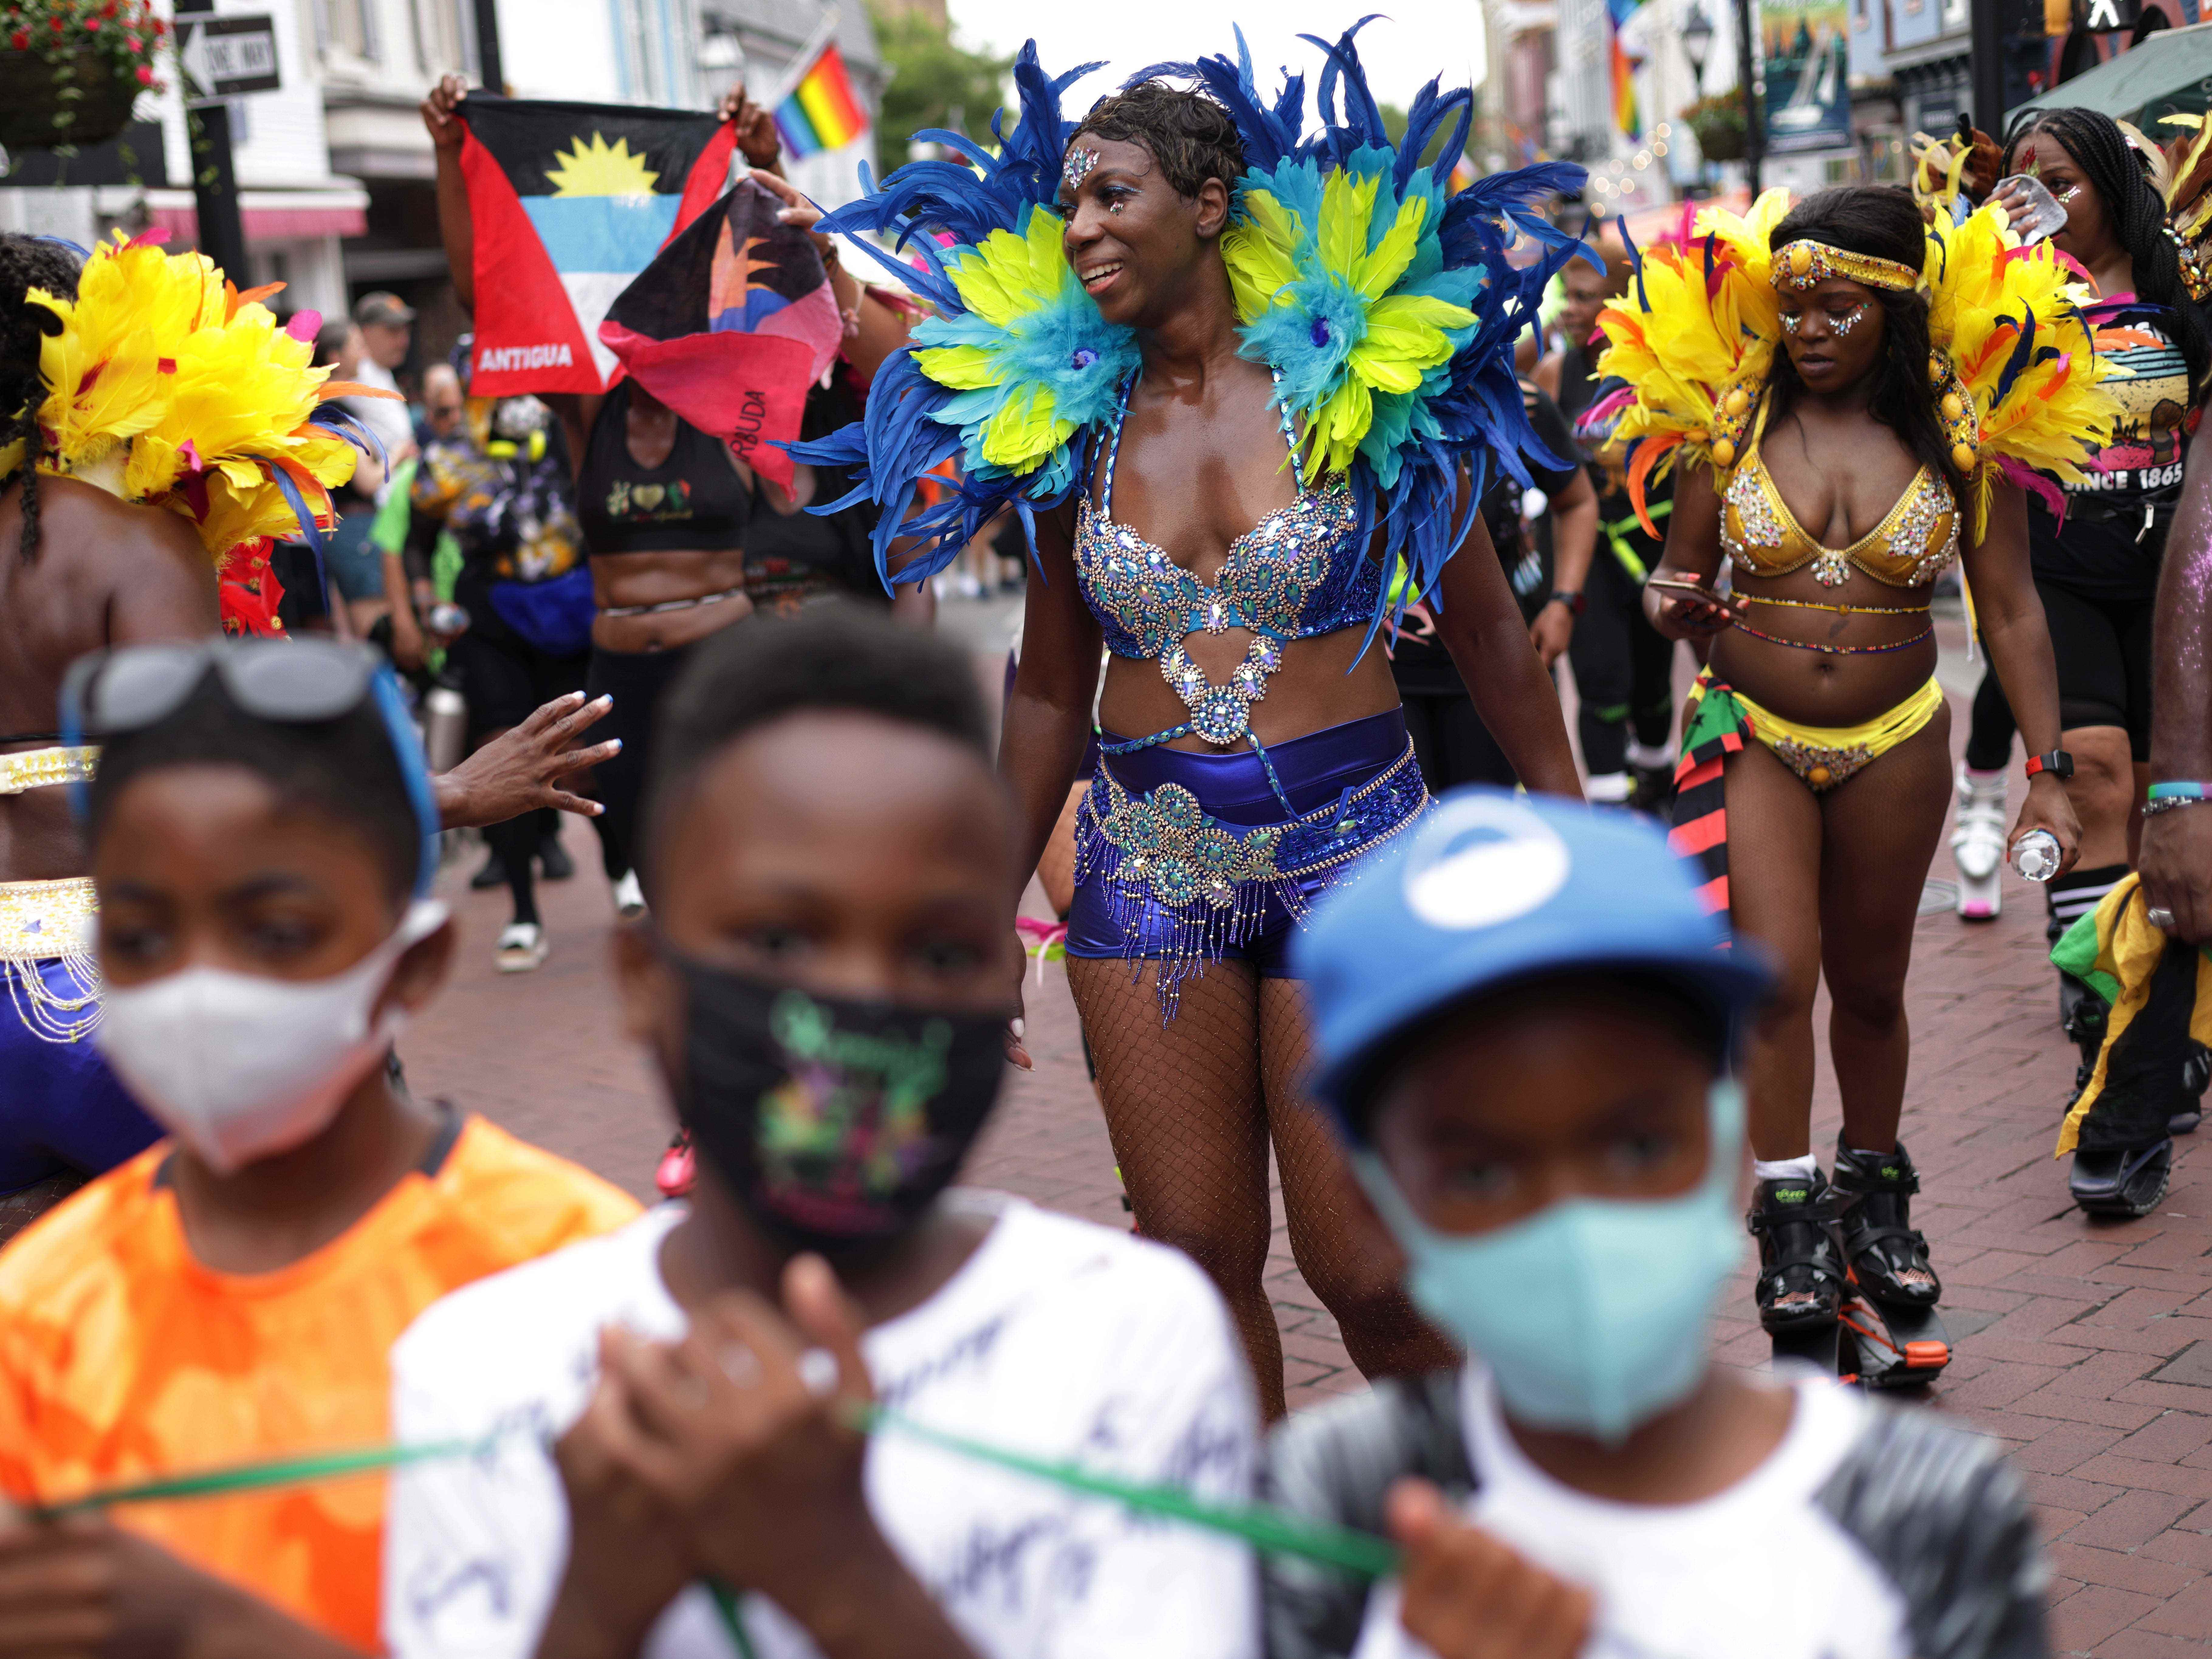 La'Verne Webb (C) von Soul2Sole Bounce Fitness trägt ein Karnevalskostüm, als sie an einer Parade zur Feier des 19. Juni 2021 in Annapolis, Maryland, teilnimmt.